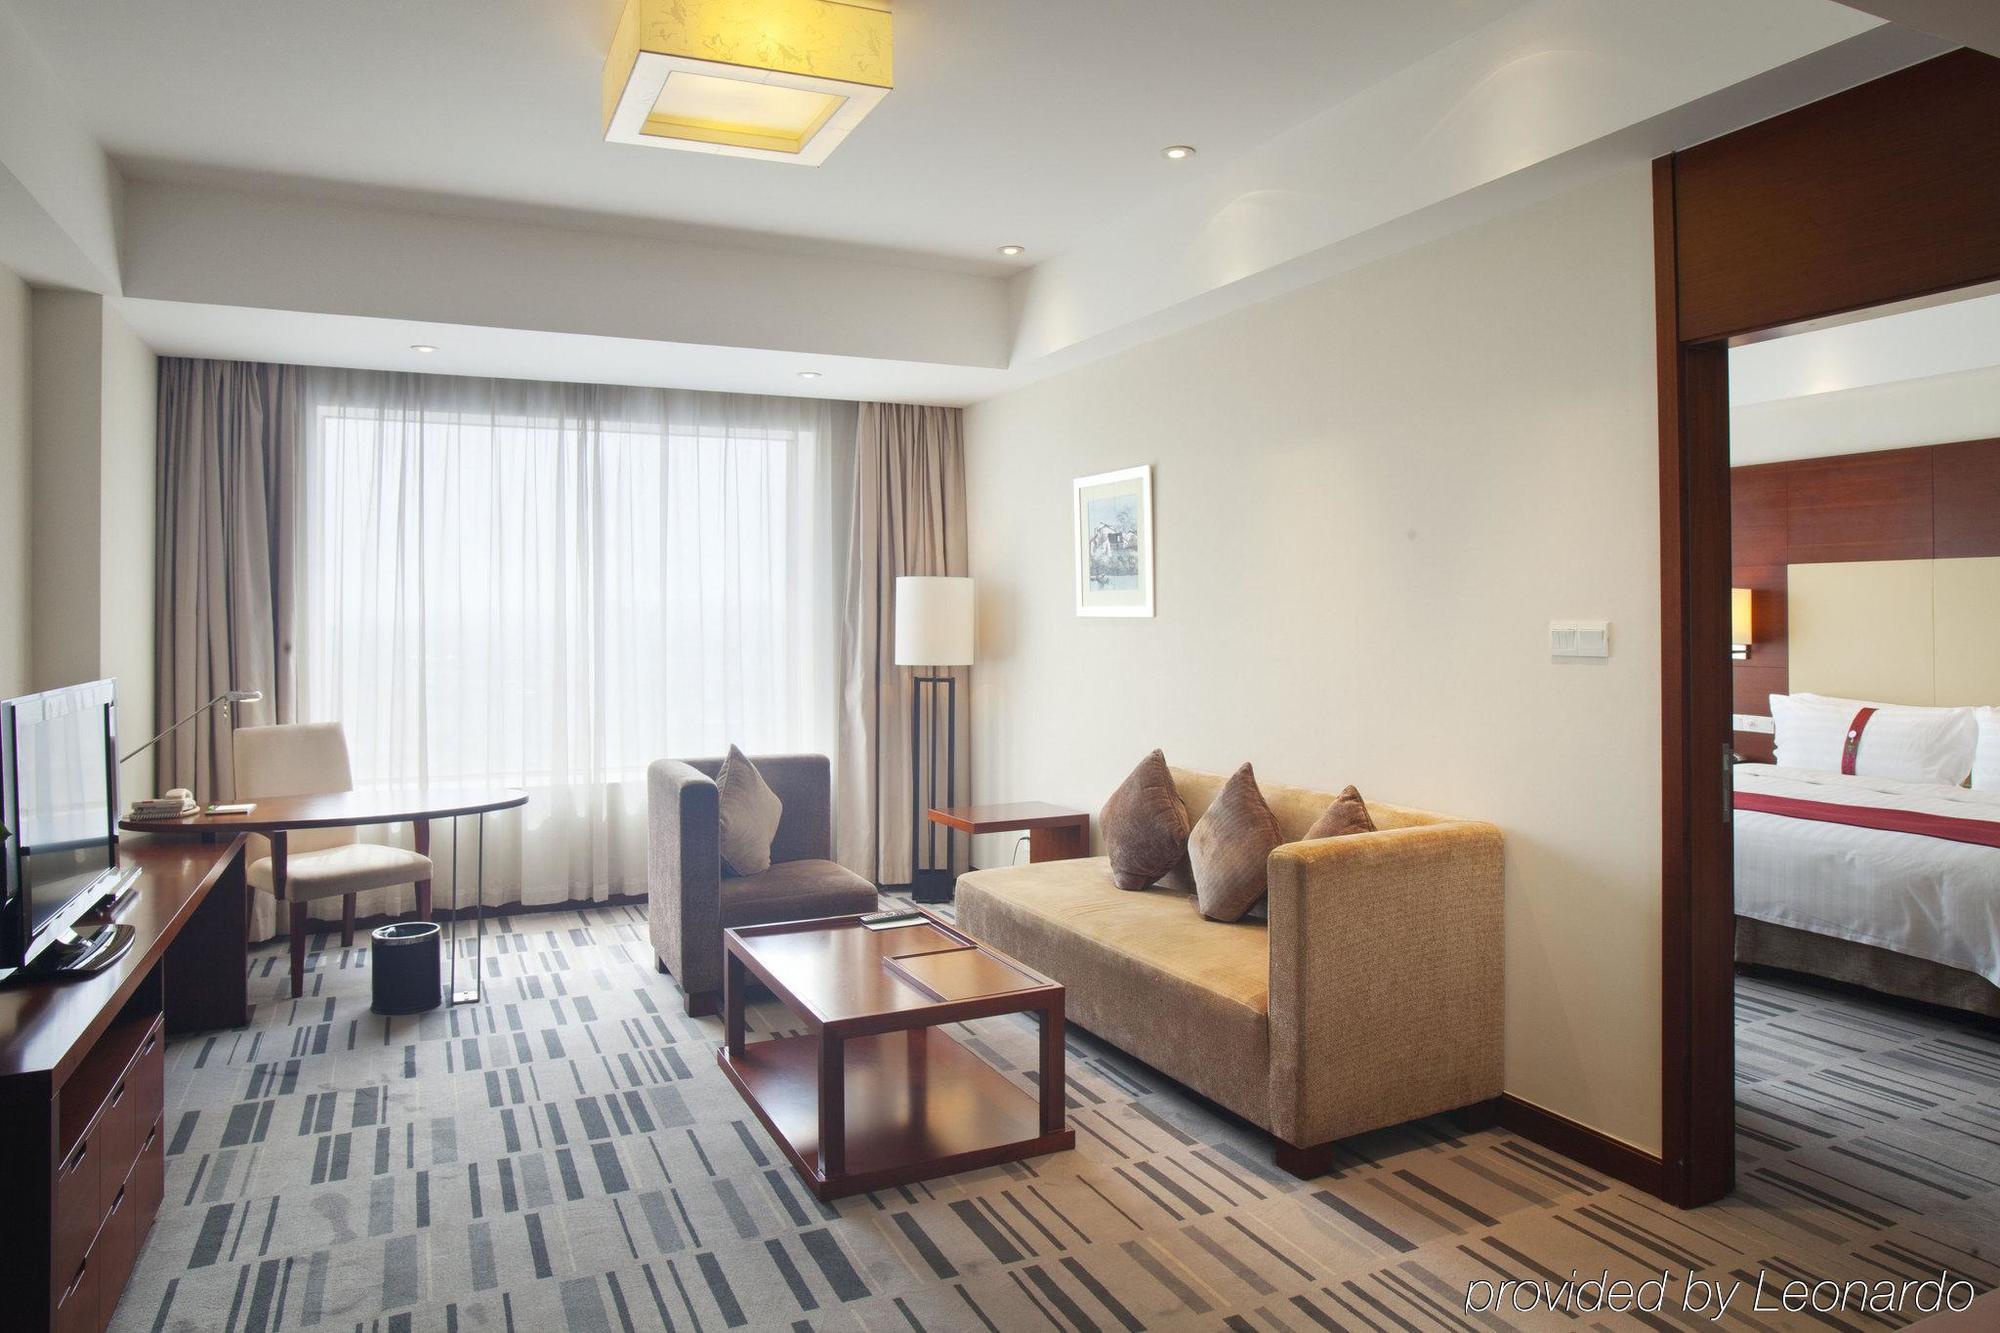 Holiday Inn Suzhou Youlian Room photo